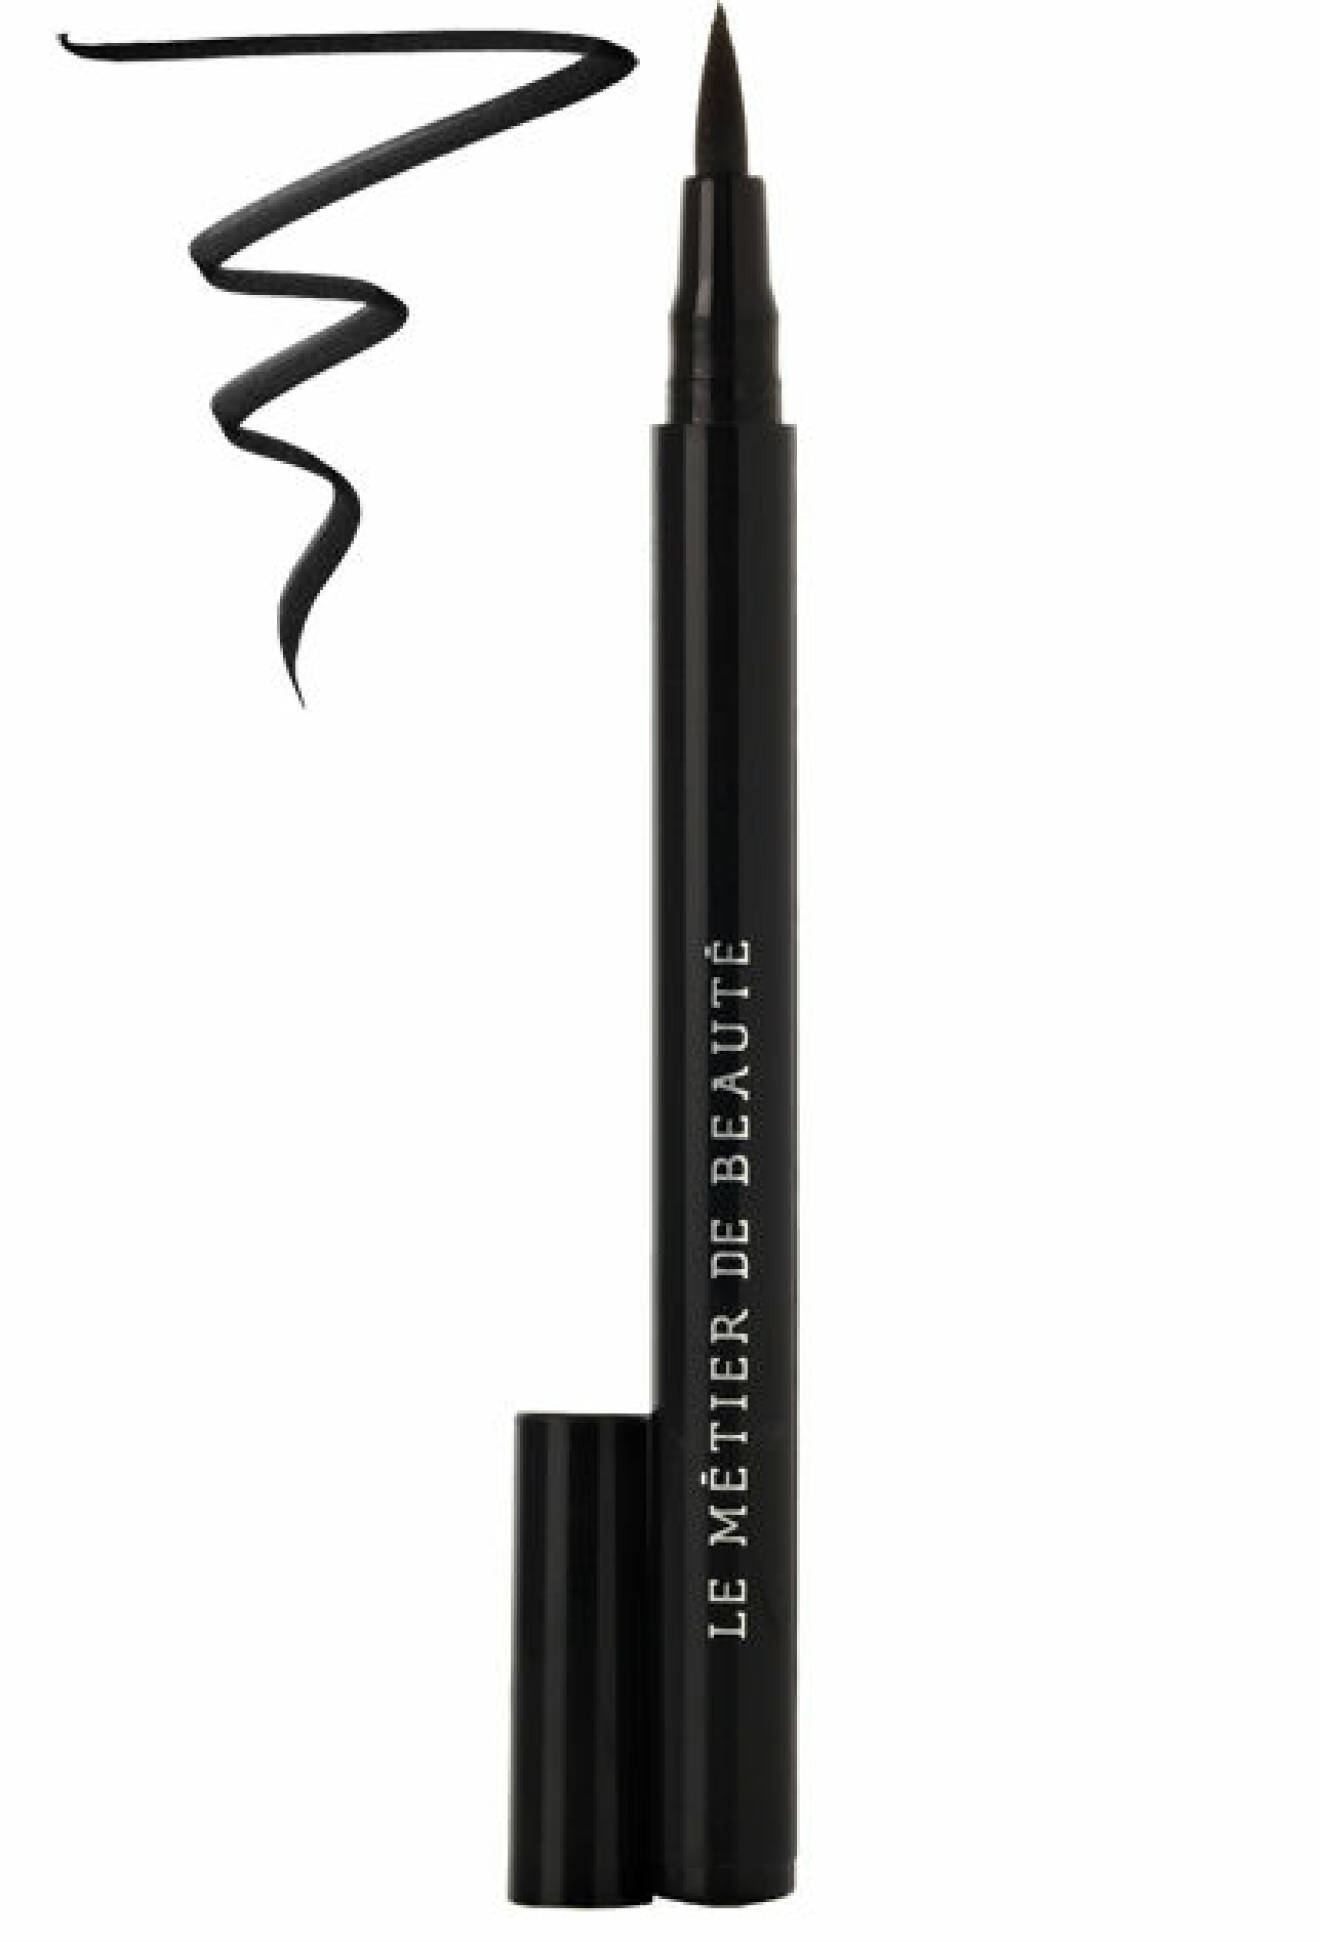 Percision Liquid Eyeliner, 598 kr, Le Metier de Beaute Net-a-porter.com